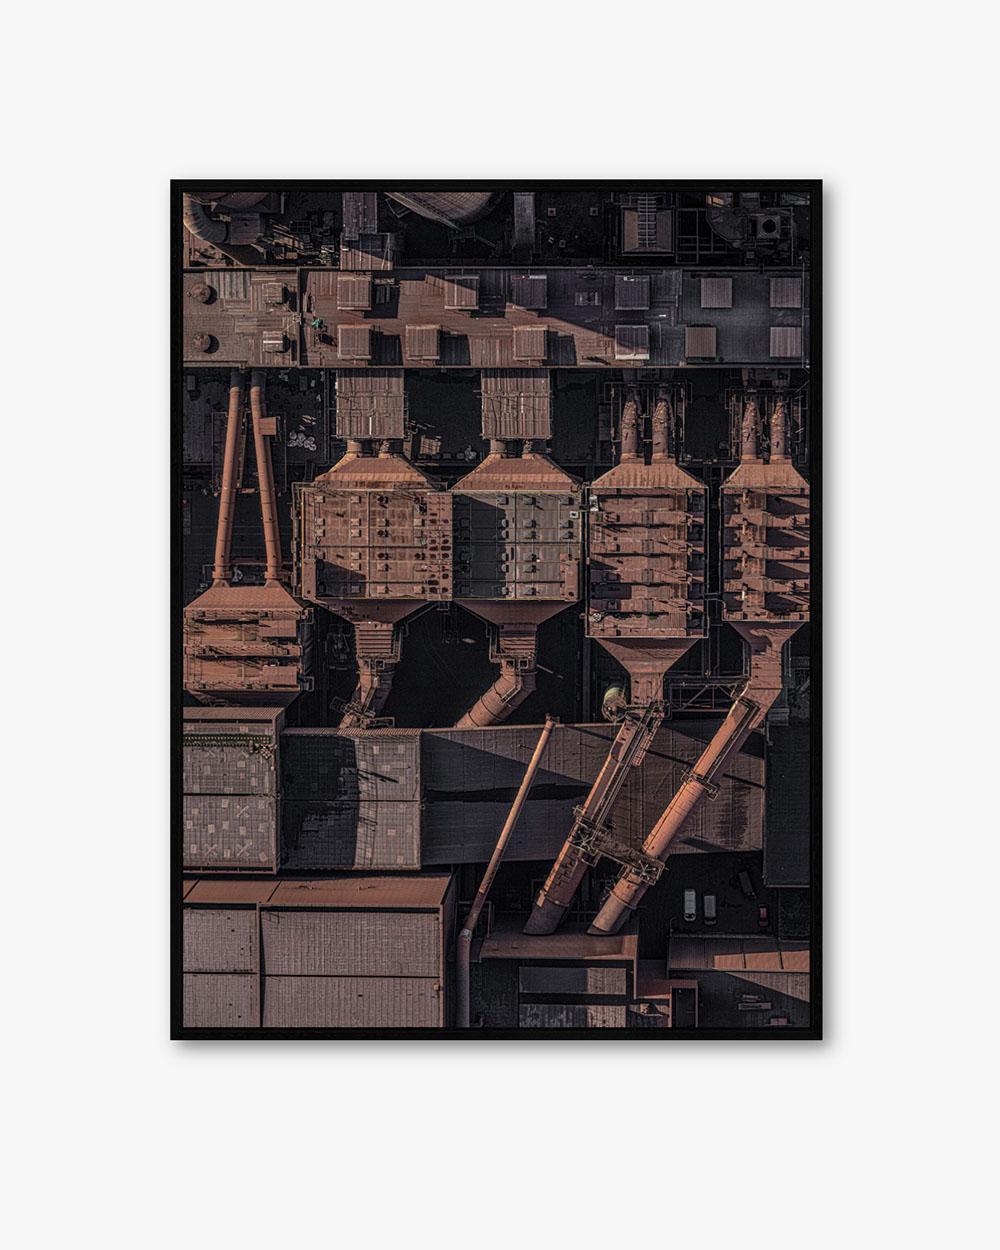 Stahlwerk 014, limitierte Auflage einer Fotografie des deutschen zeitgenössischen Künstlers Bernhard Lang. 
Seit 2010 widmet sich Bernhard Lang der Luftbildfotografie, reist um die Welt und sucht nach einzigartigen Landschaften, die durch